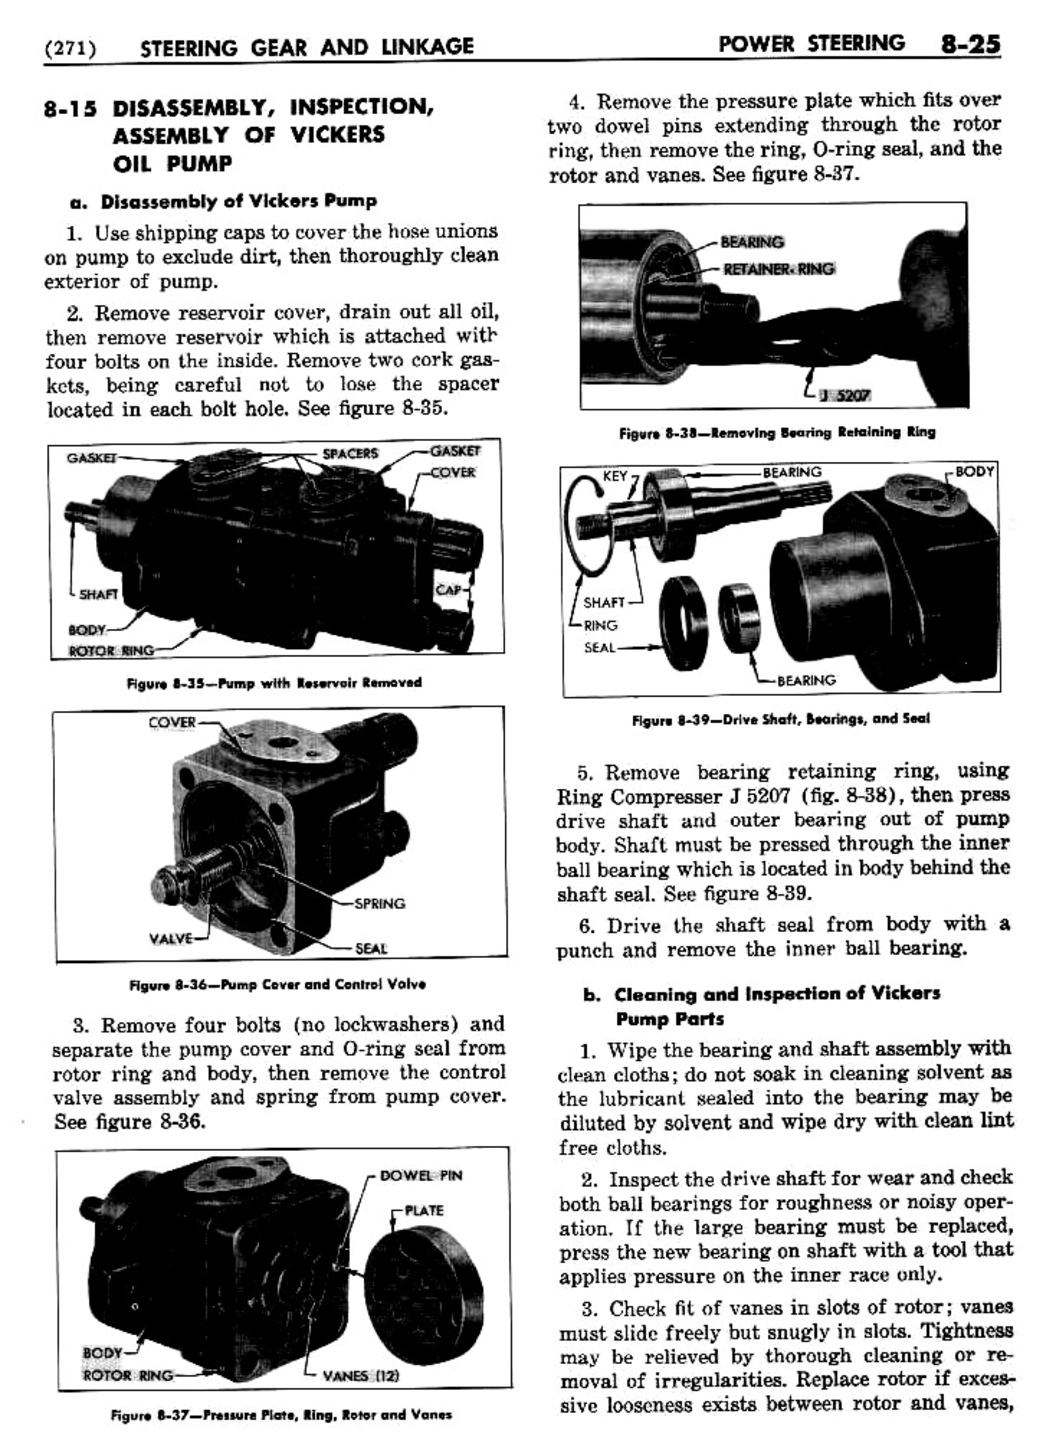 n_09 1955 Buick Shop Manual - Steering-025-025.jpg